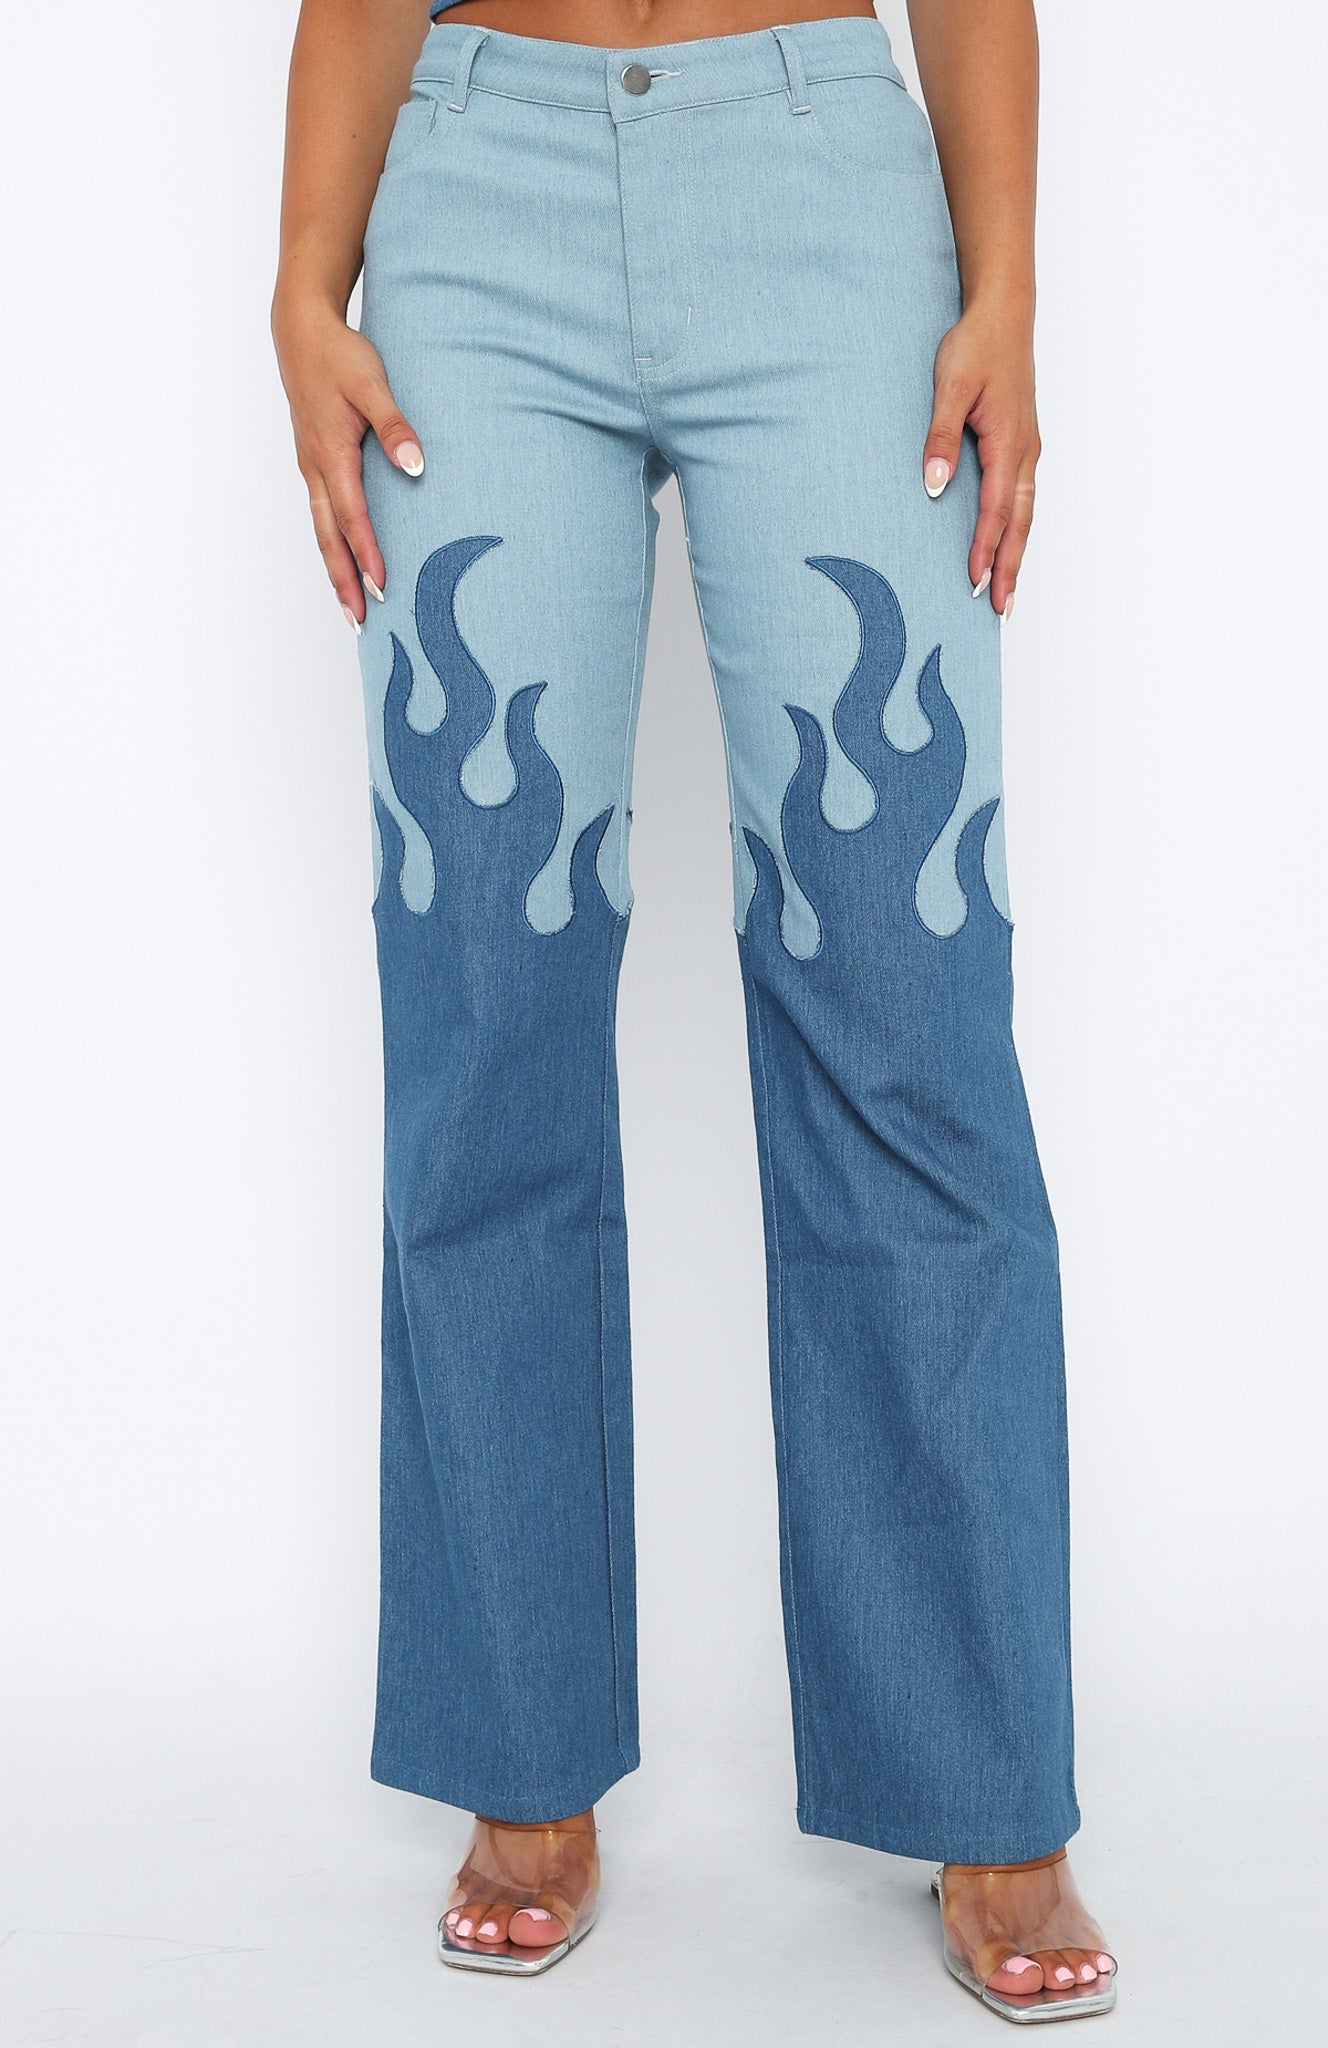 Sikker uld lidenskabelig Don't Let Them Pants Denim Flame | White Fox Boutique USA